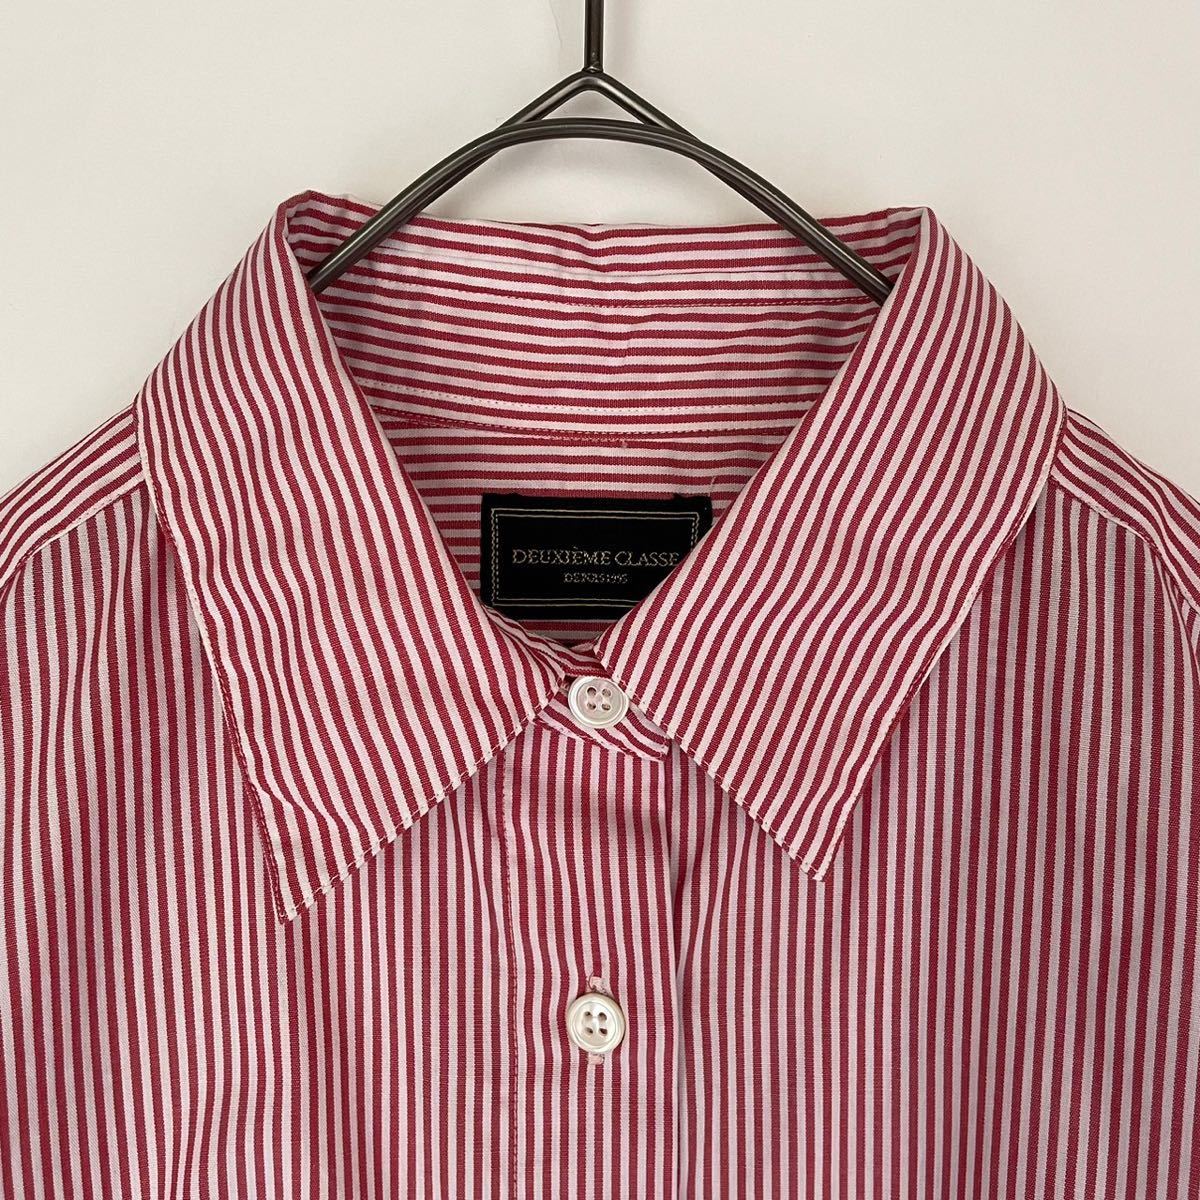 Deuxieme Classe ドゥーズィエムクラス 美品 MONTI ロンストカシュクールシャツ ストライプシャツ シャツ ブラウス 2way  コットン100% 赤白